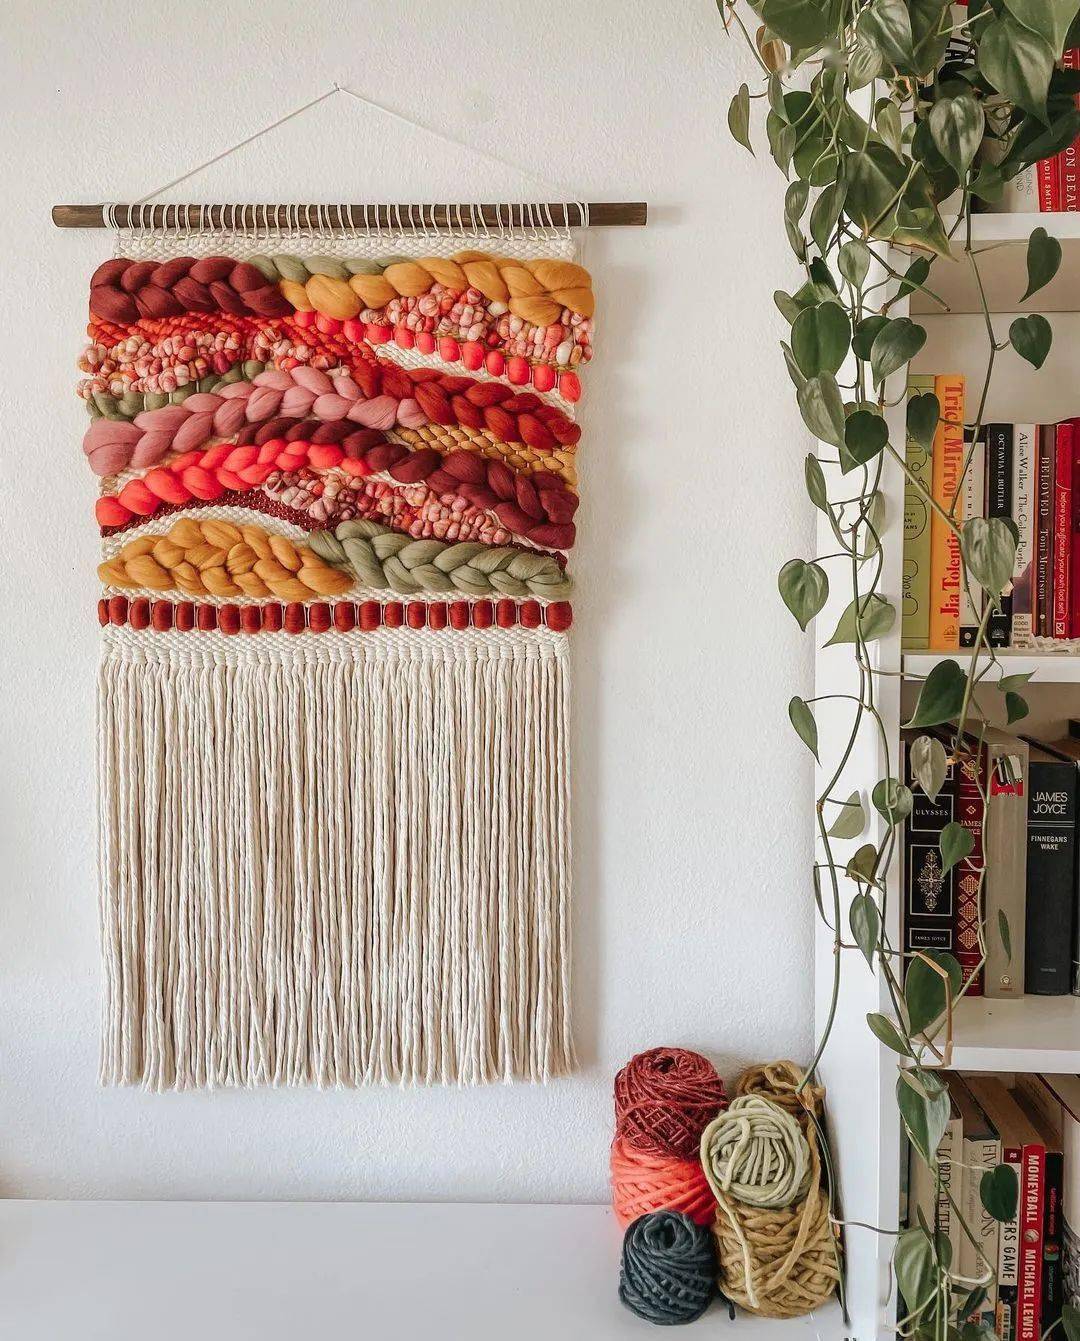 比起徒手编织的挂毯,这种毛线挂毯的工艺会更复杂,需要借助一个类似